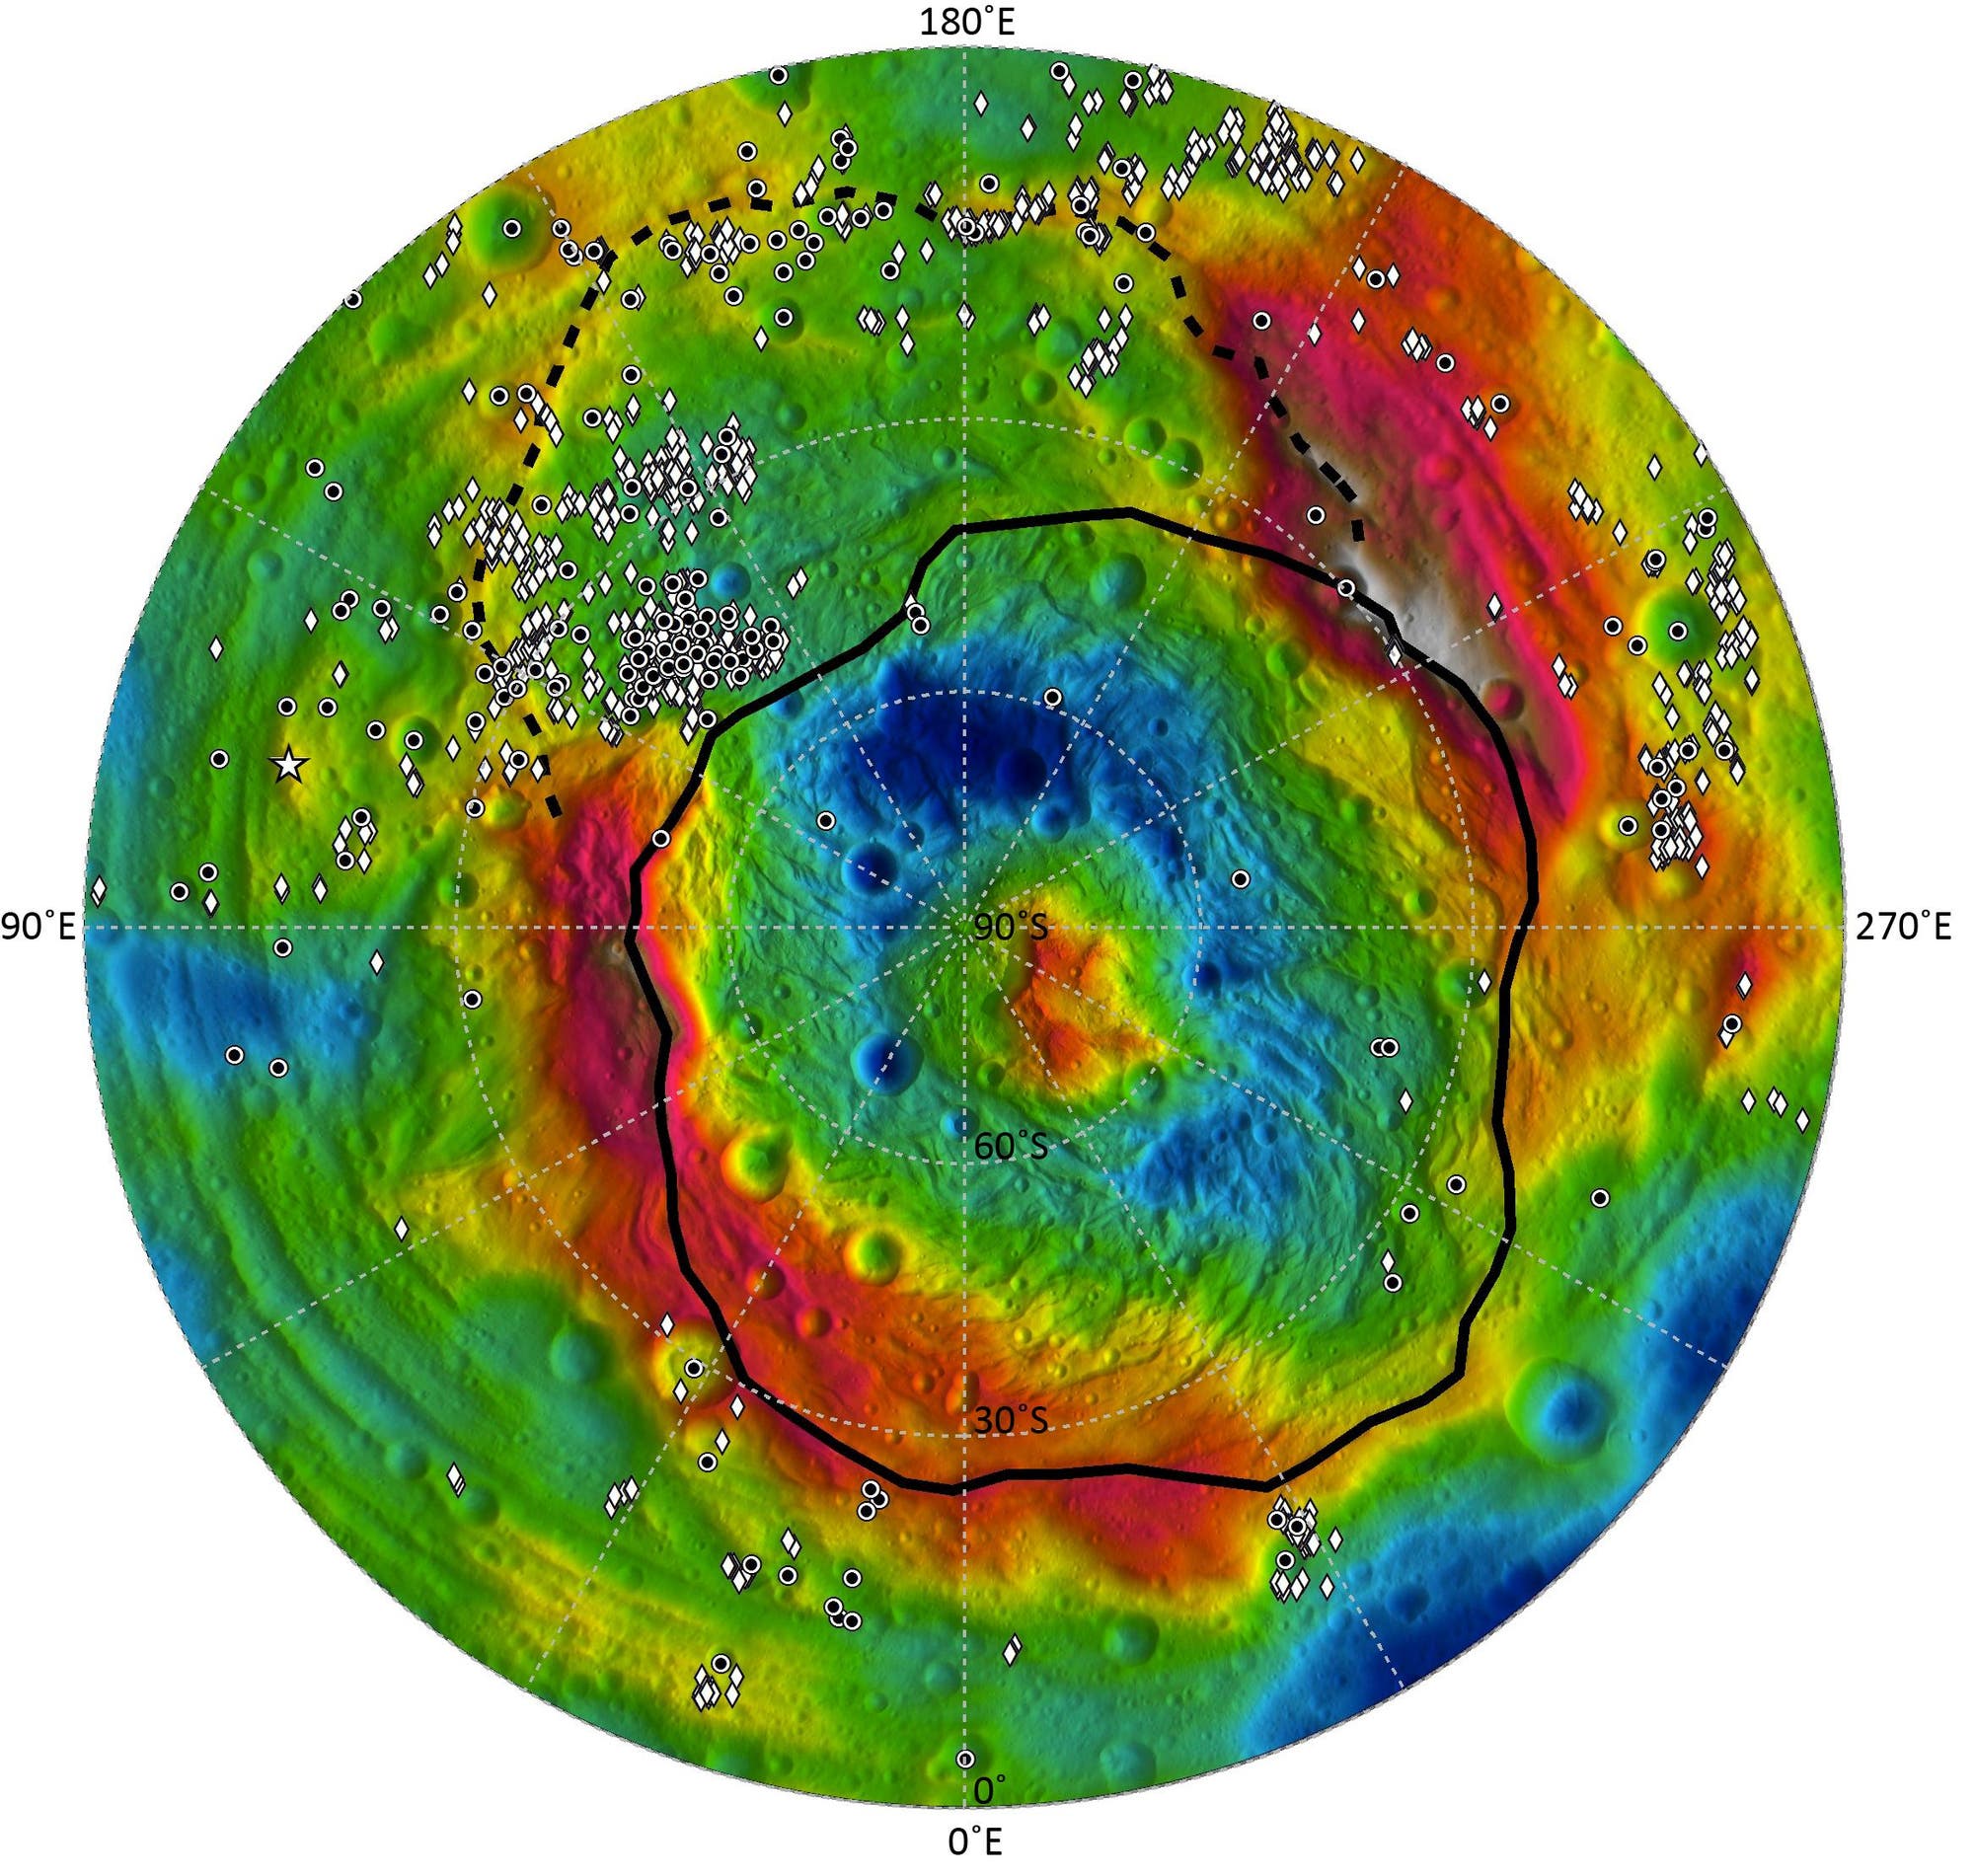 Übersichtskarte der Südhalbkugel des Asteroiden Vesta